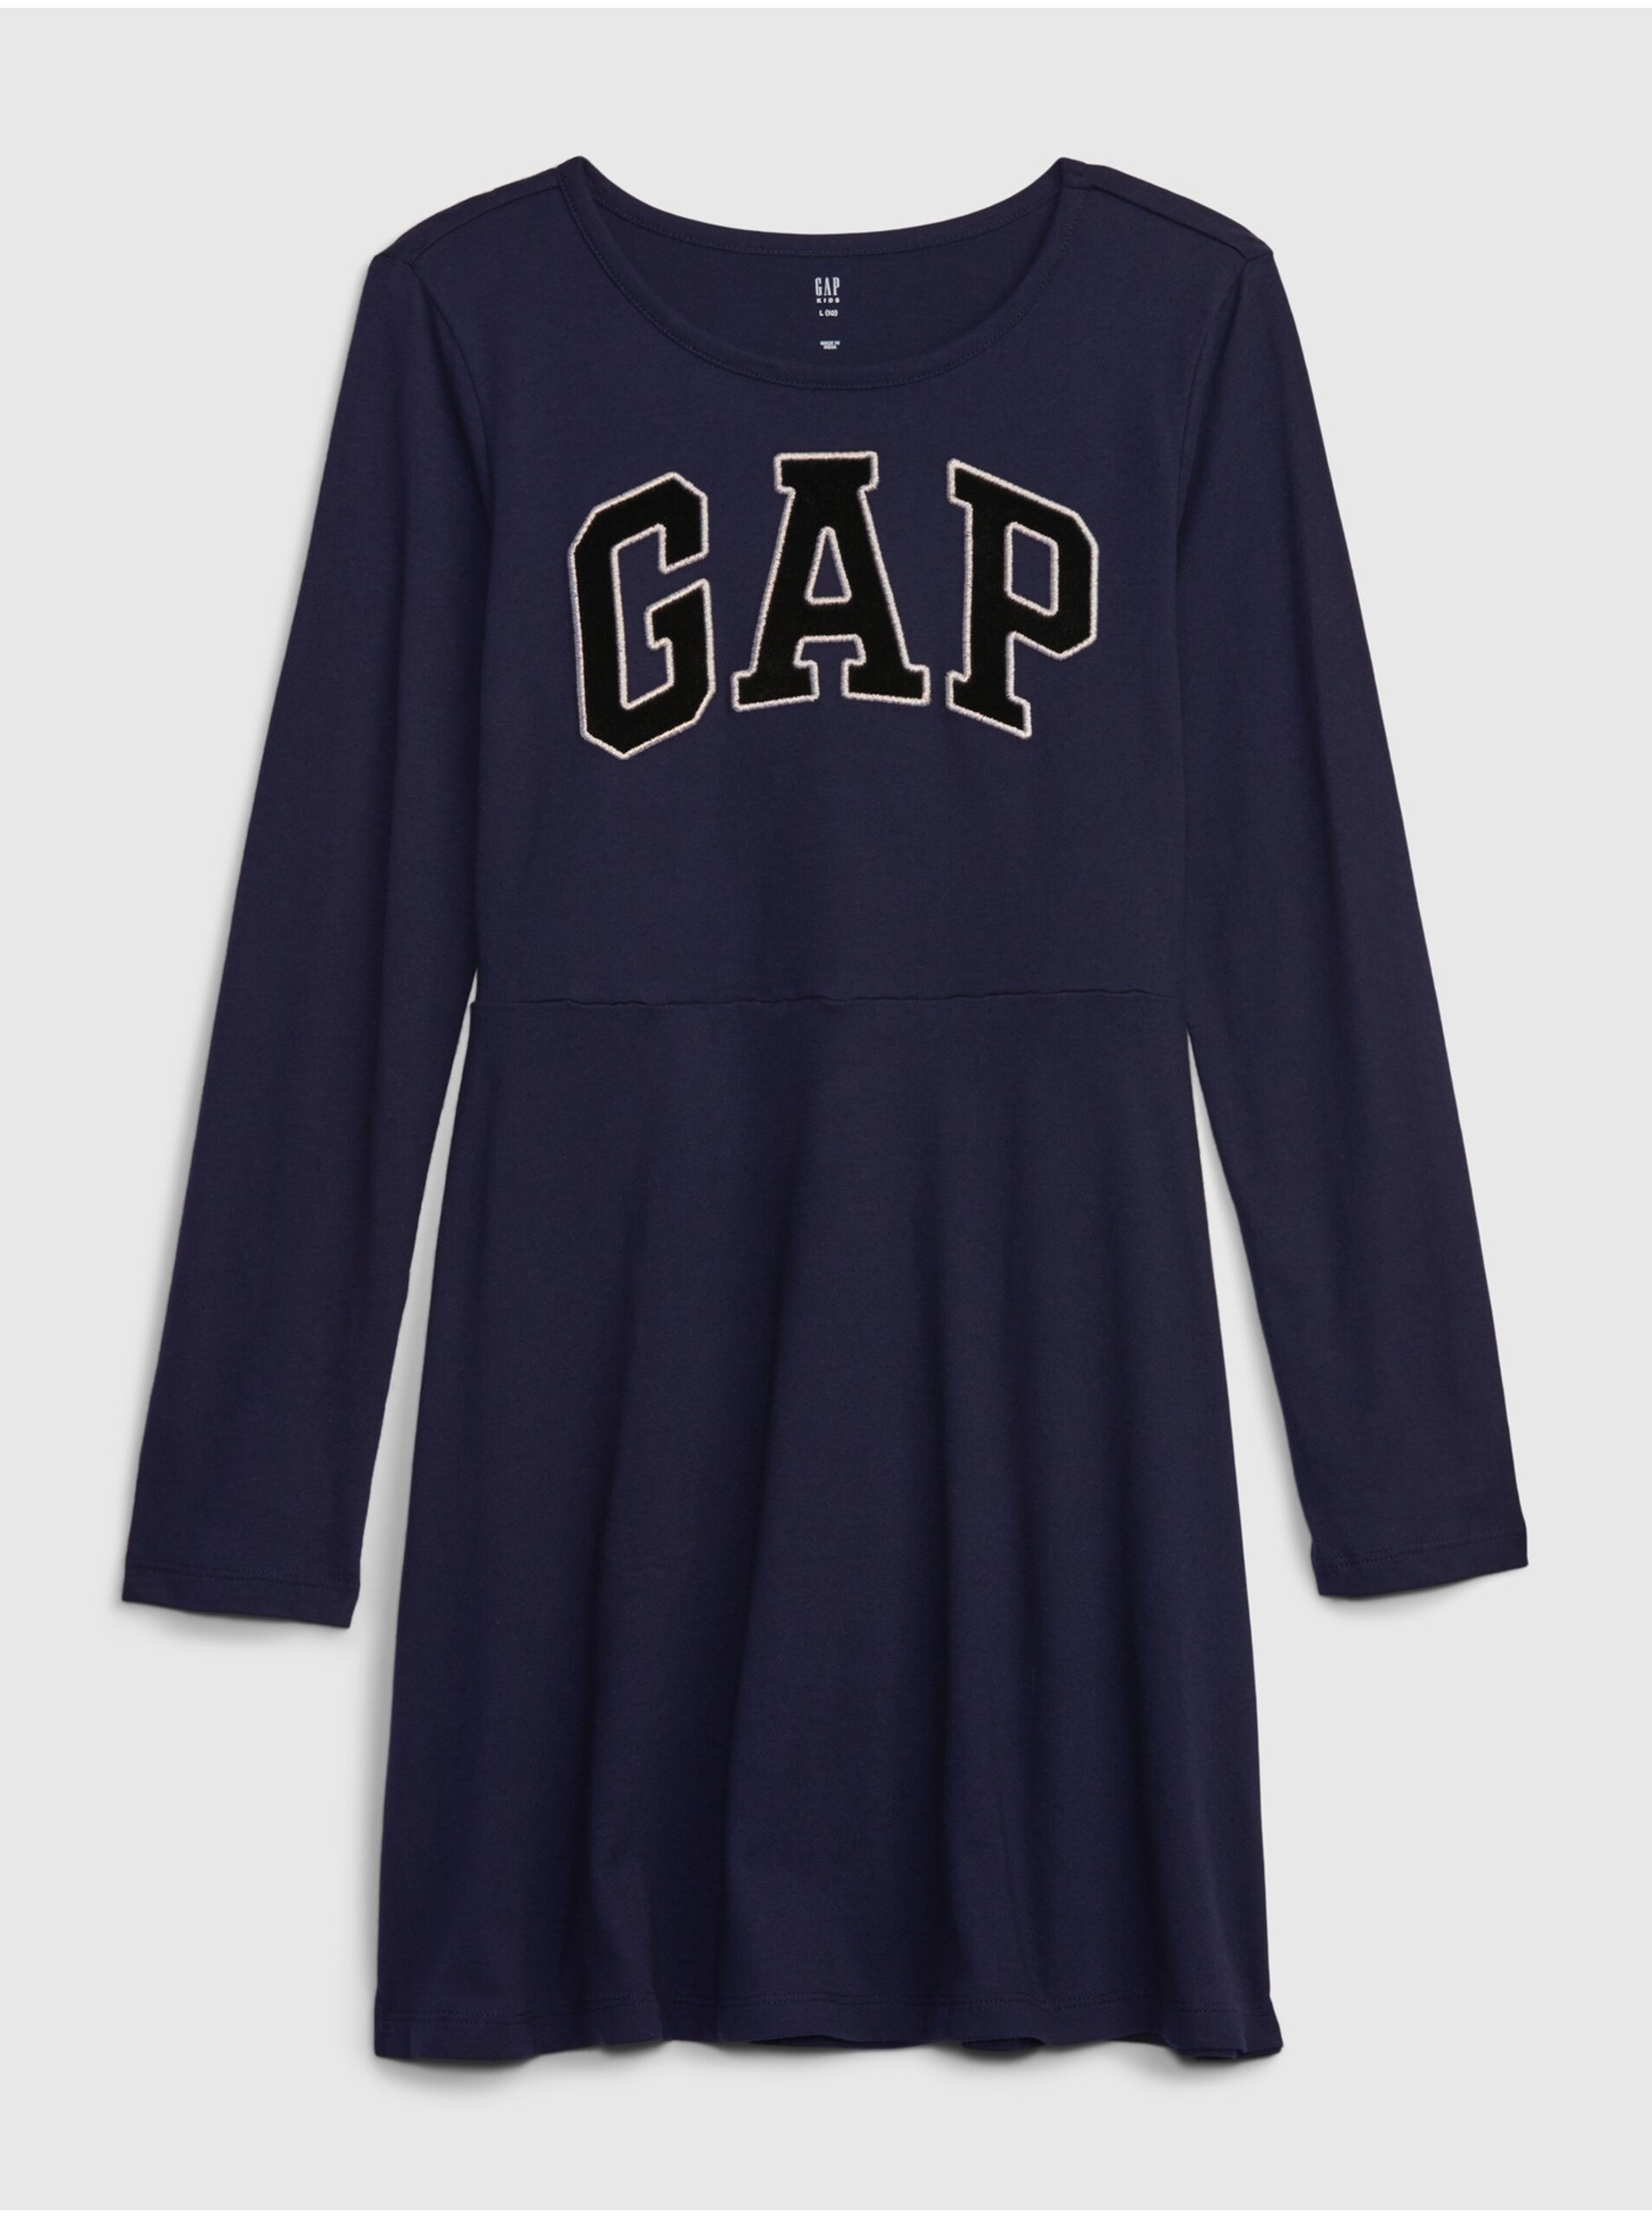 Lacno Tmavomodré dievčenské šaty s logom GAP